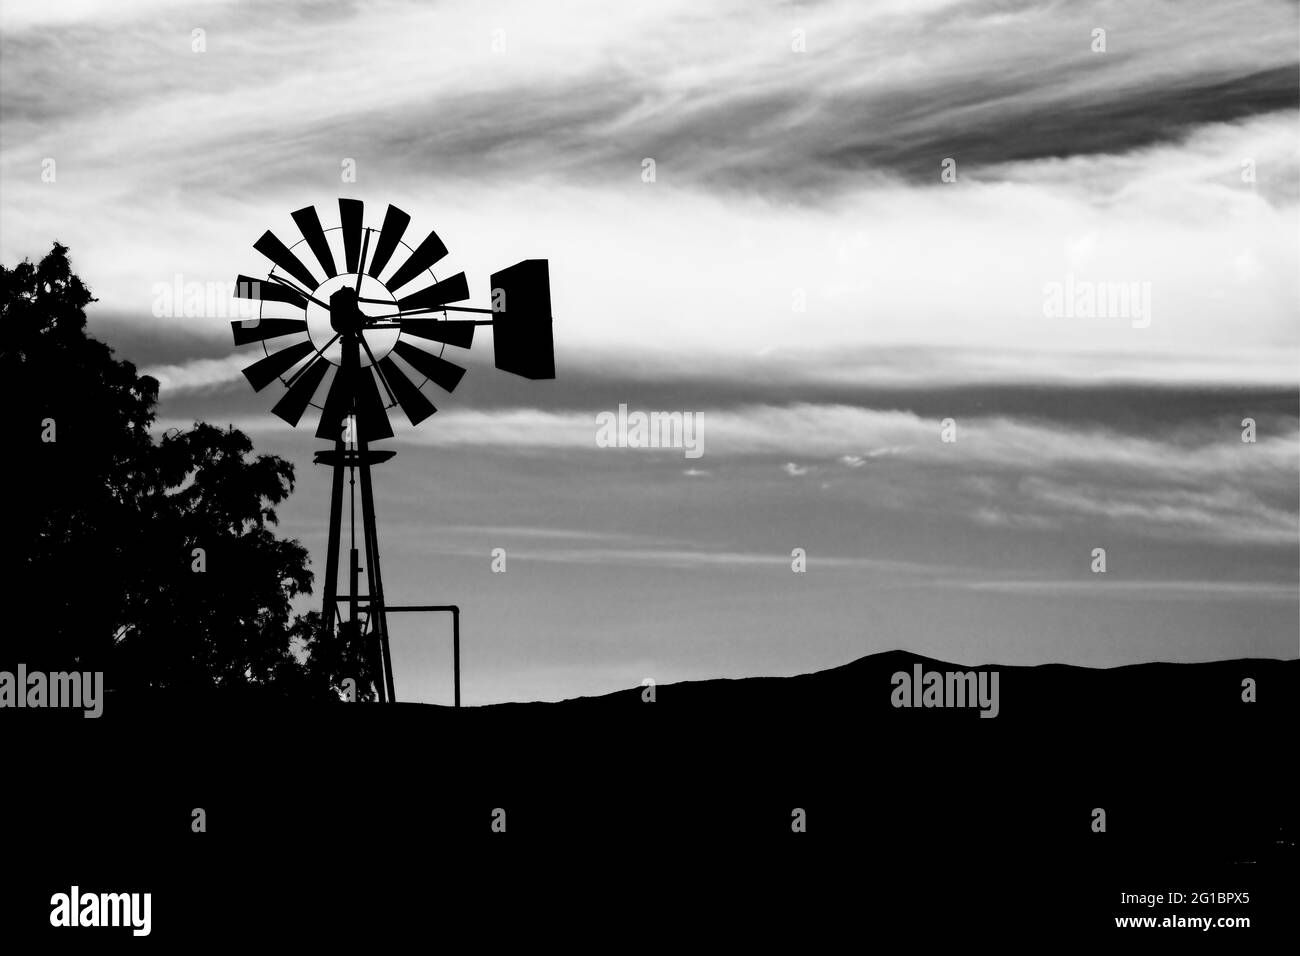 Una silhouette ricca, scura, nera e bianca di un mulino a vento vintage contro un cielo nuvoloso e sovrastato proprio come il crepuscolo prende piede nel vecchio West d'America. Foto Stock